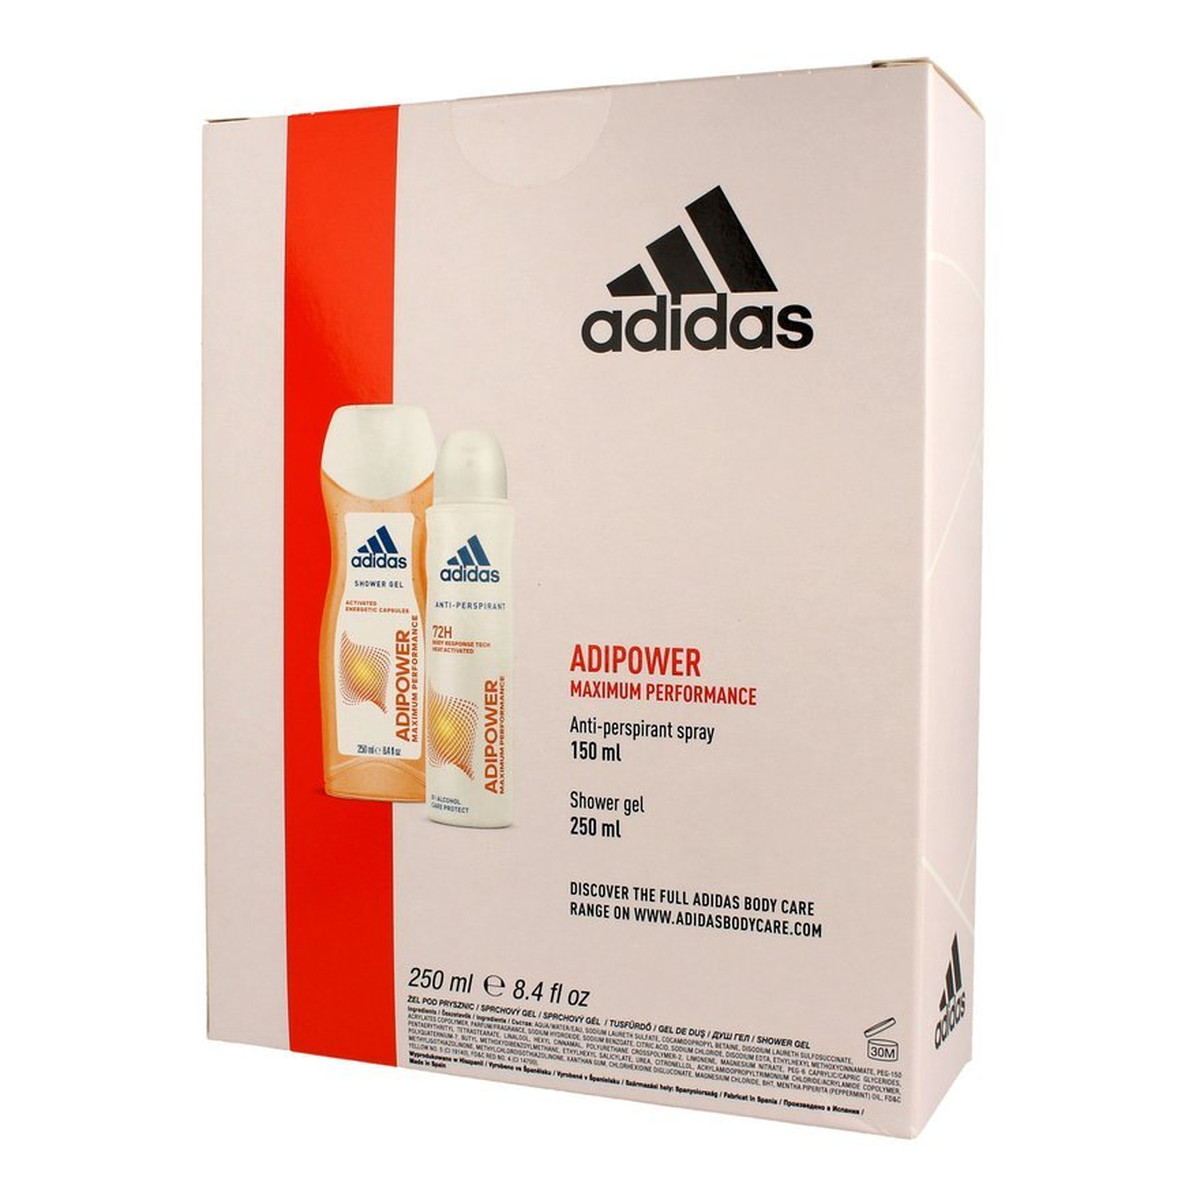 Adidas Adipower Women Zestaw prezentowy (dezodorant spray 150ml+żel pod prysznic 250ml)